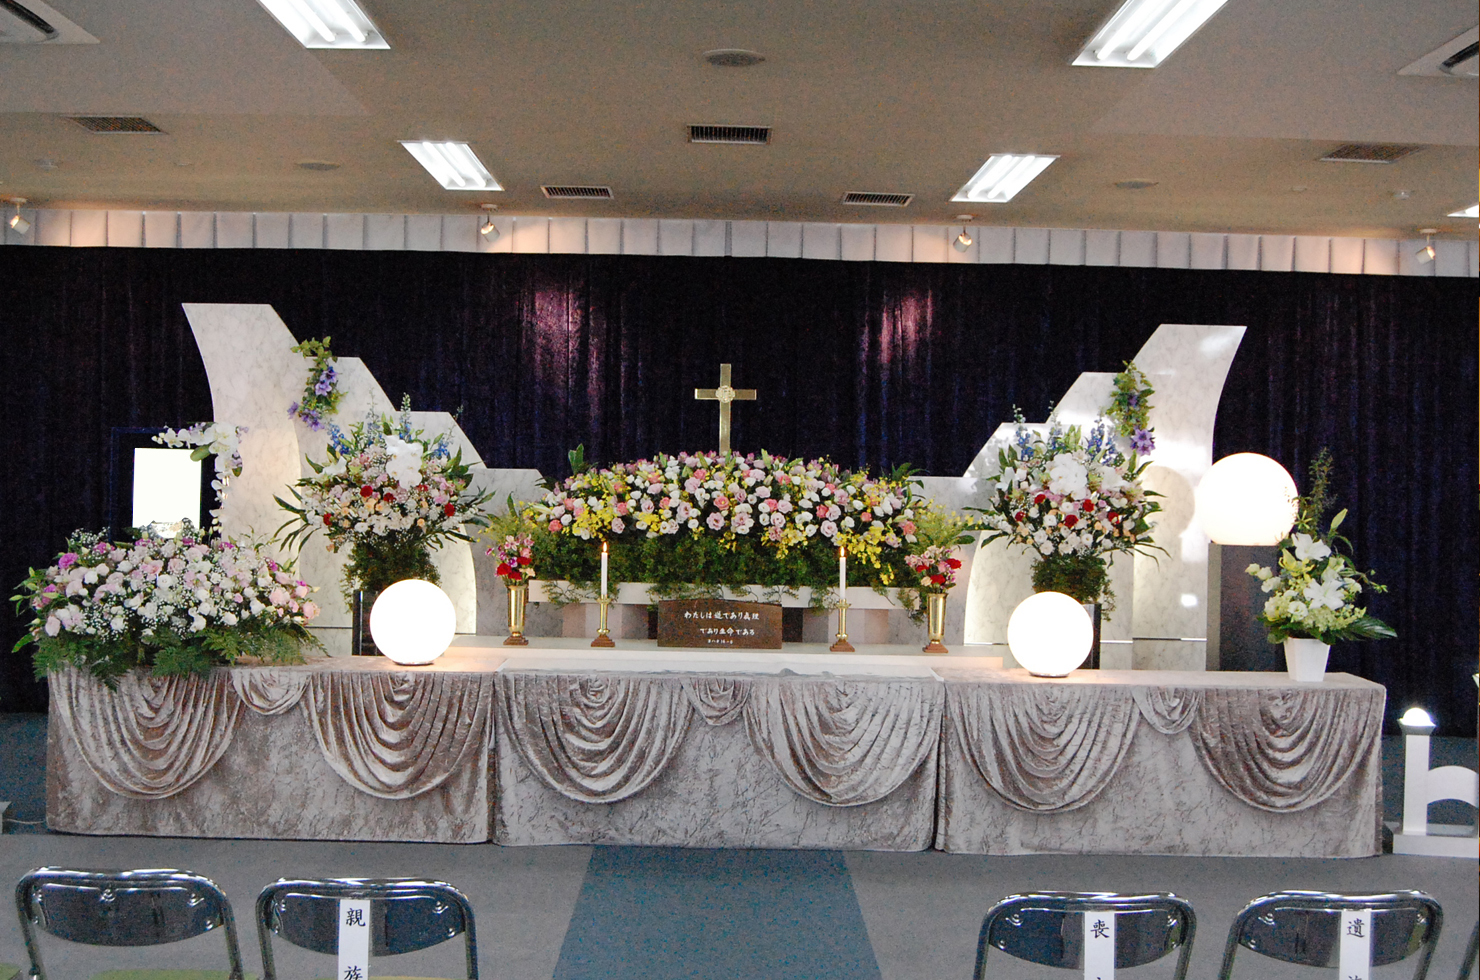 キリスト式での葬儀 祭壇01